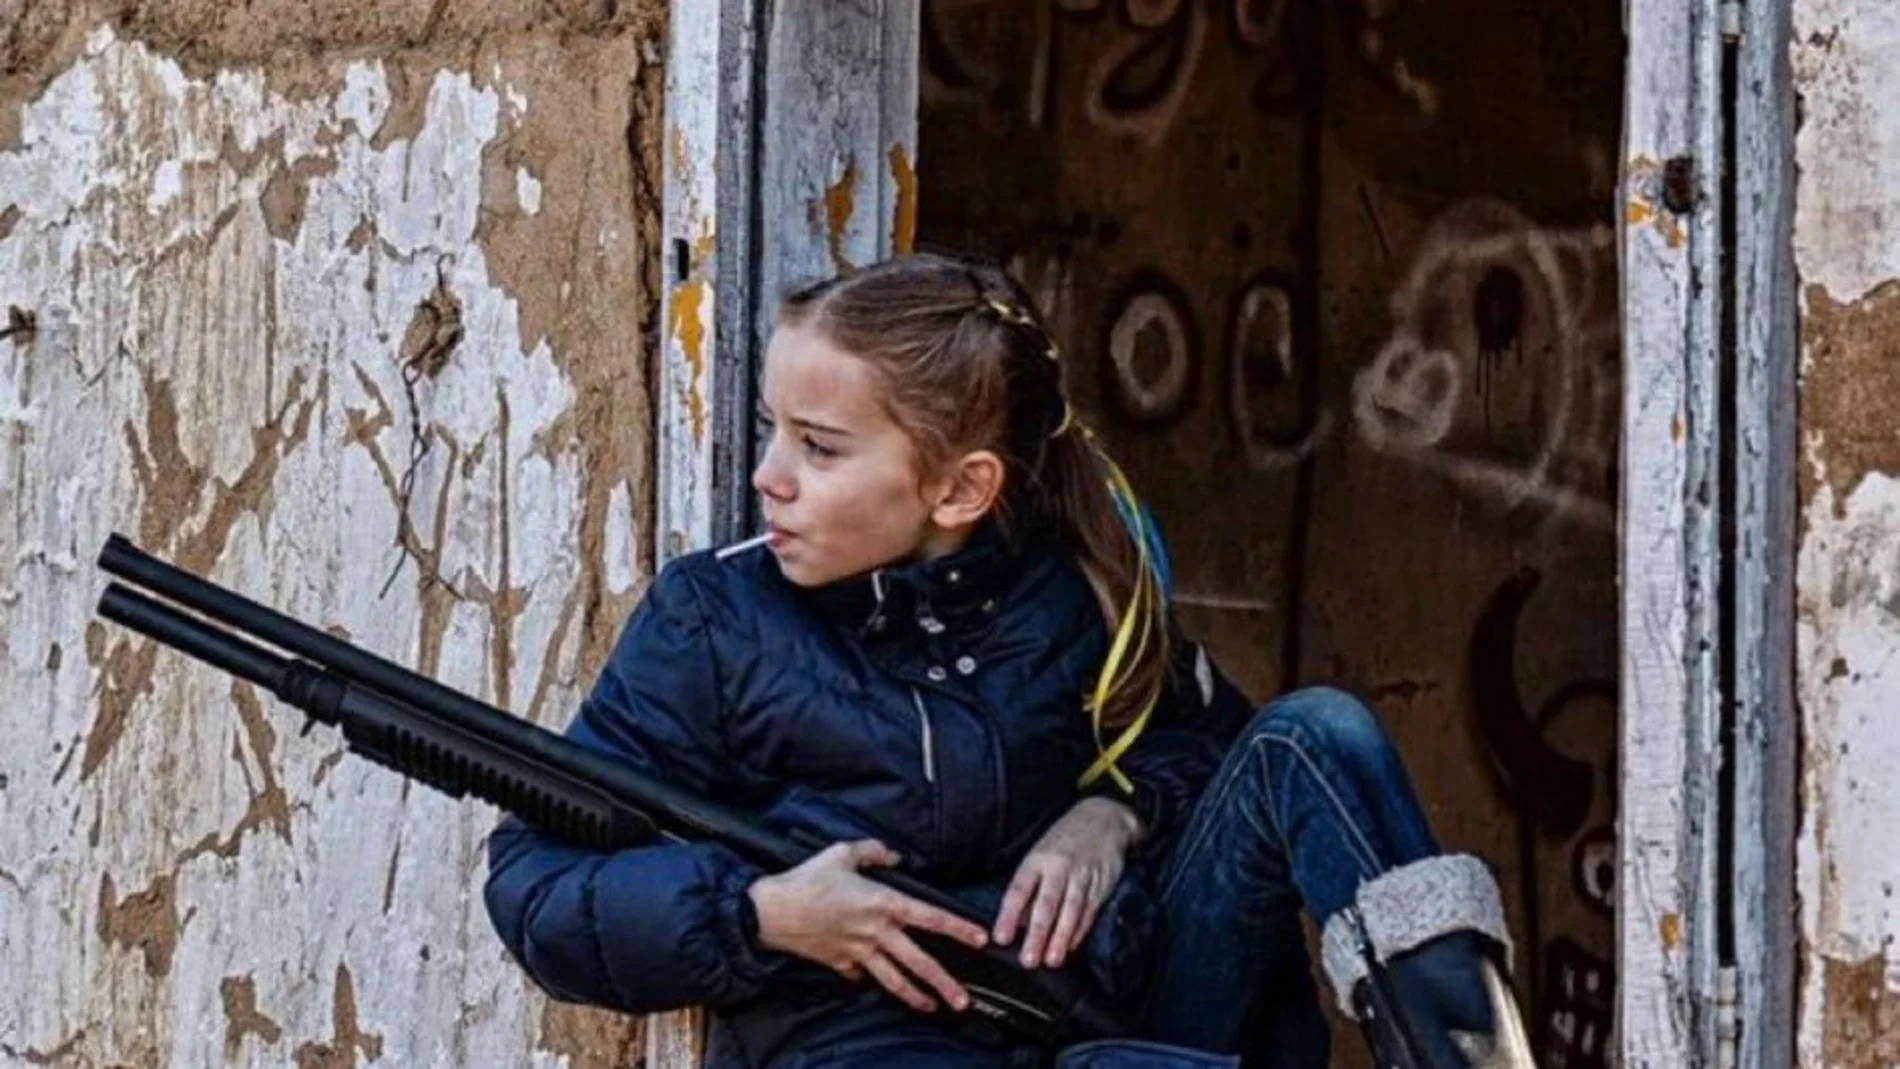 La dura imagen de una niña con una piruleta y un fusil de asalto que refleja la realidad de los más jóvenes en Ucrania